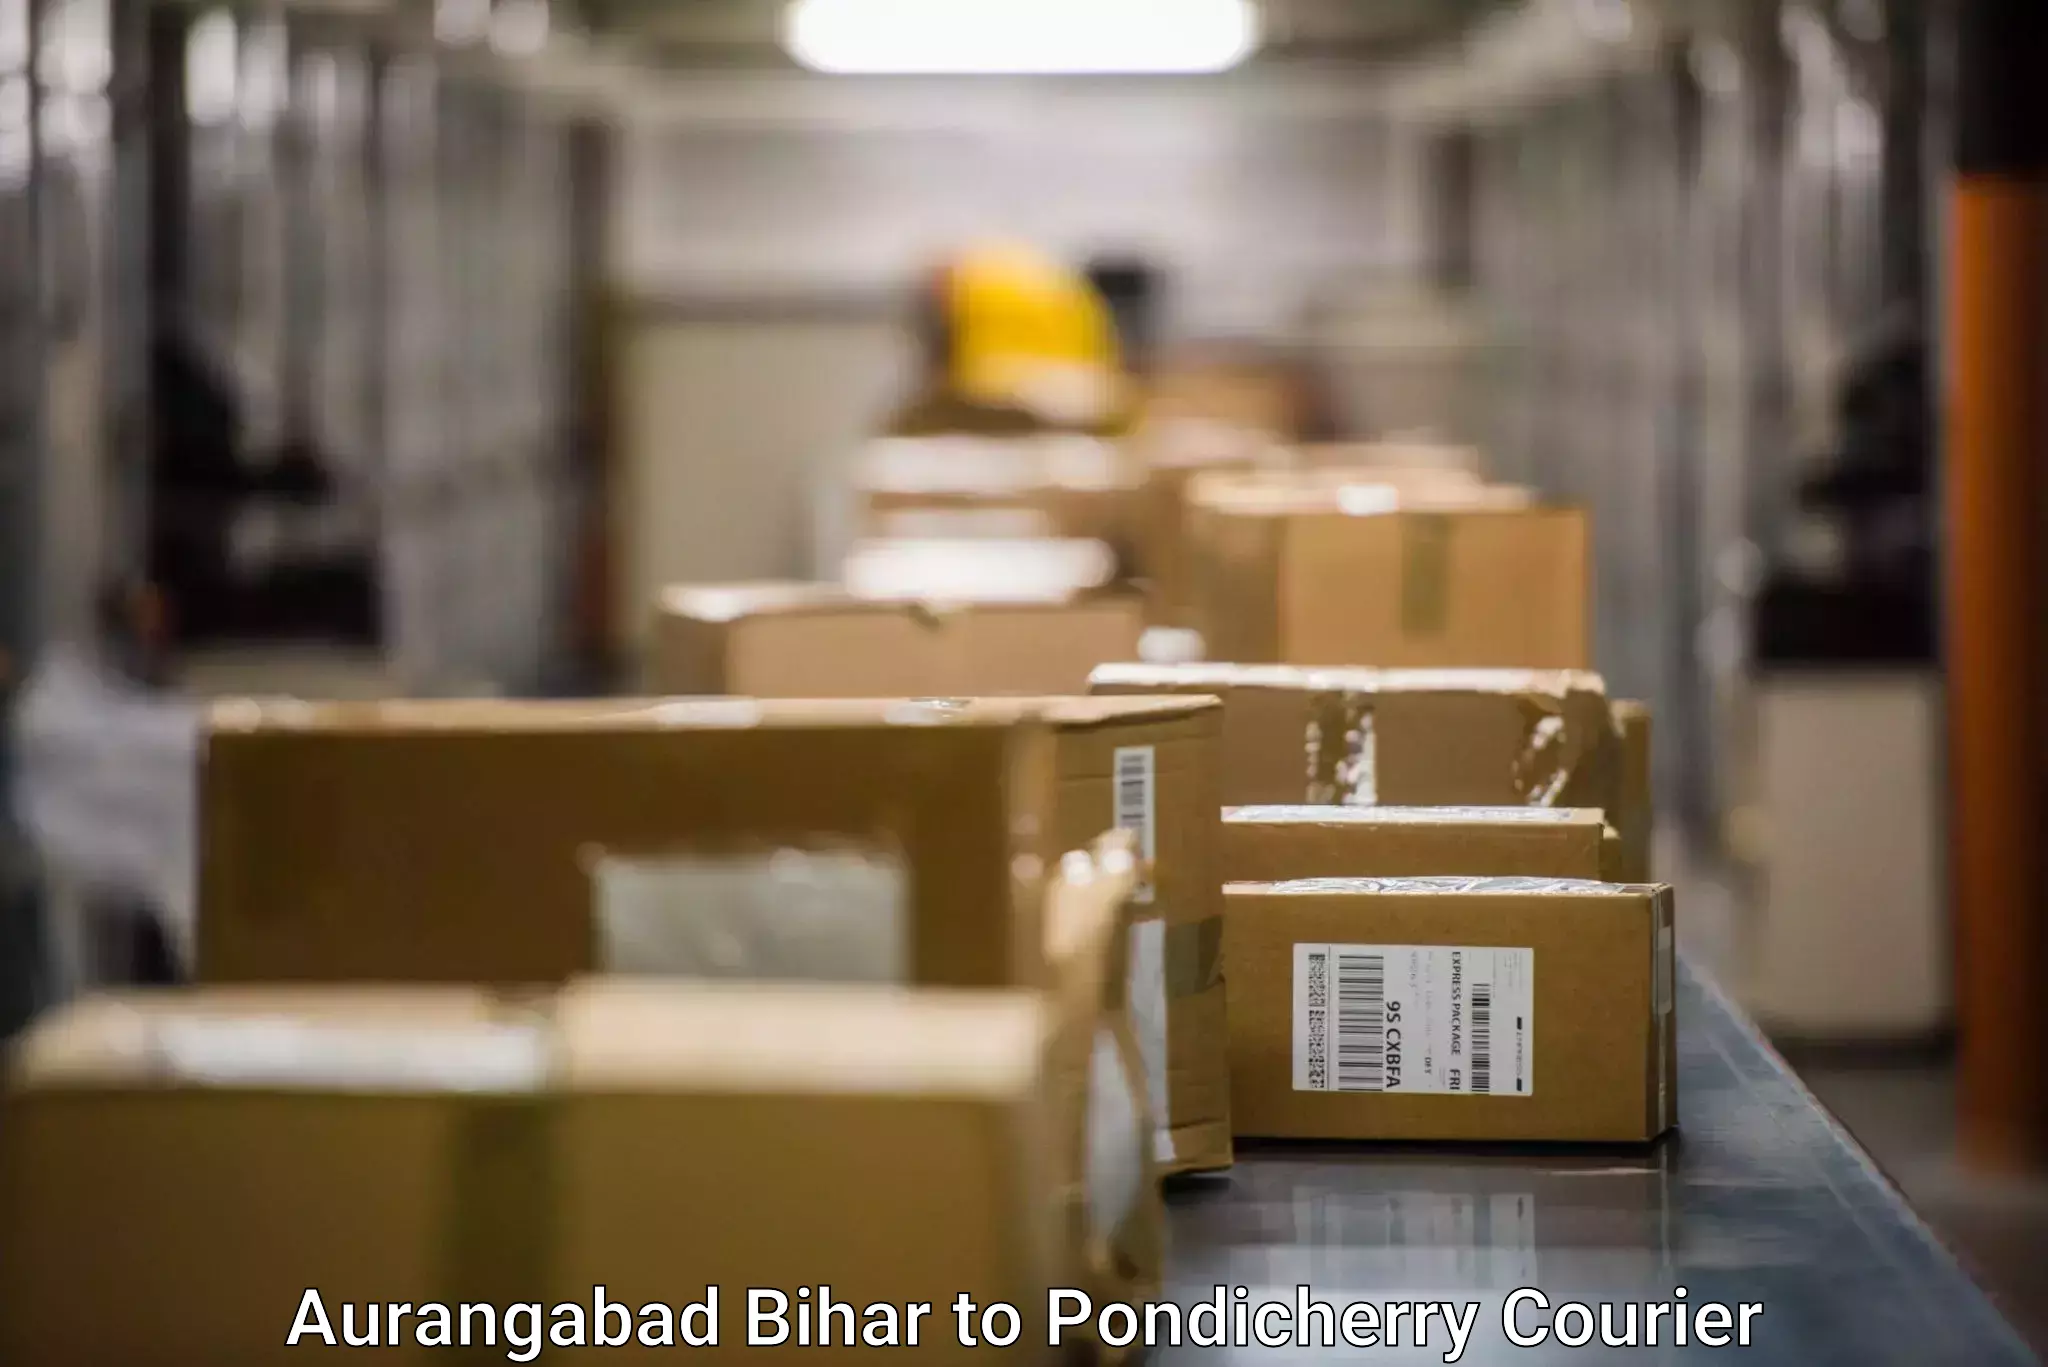 State-of-the-art courier technology Aurangabad Bihar to Karaikal